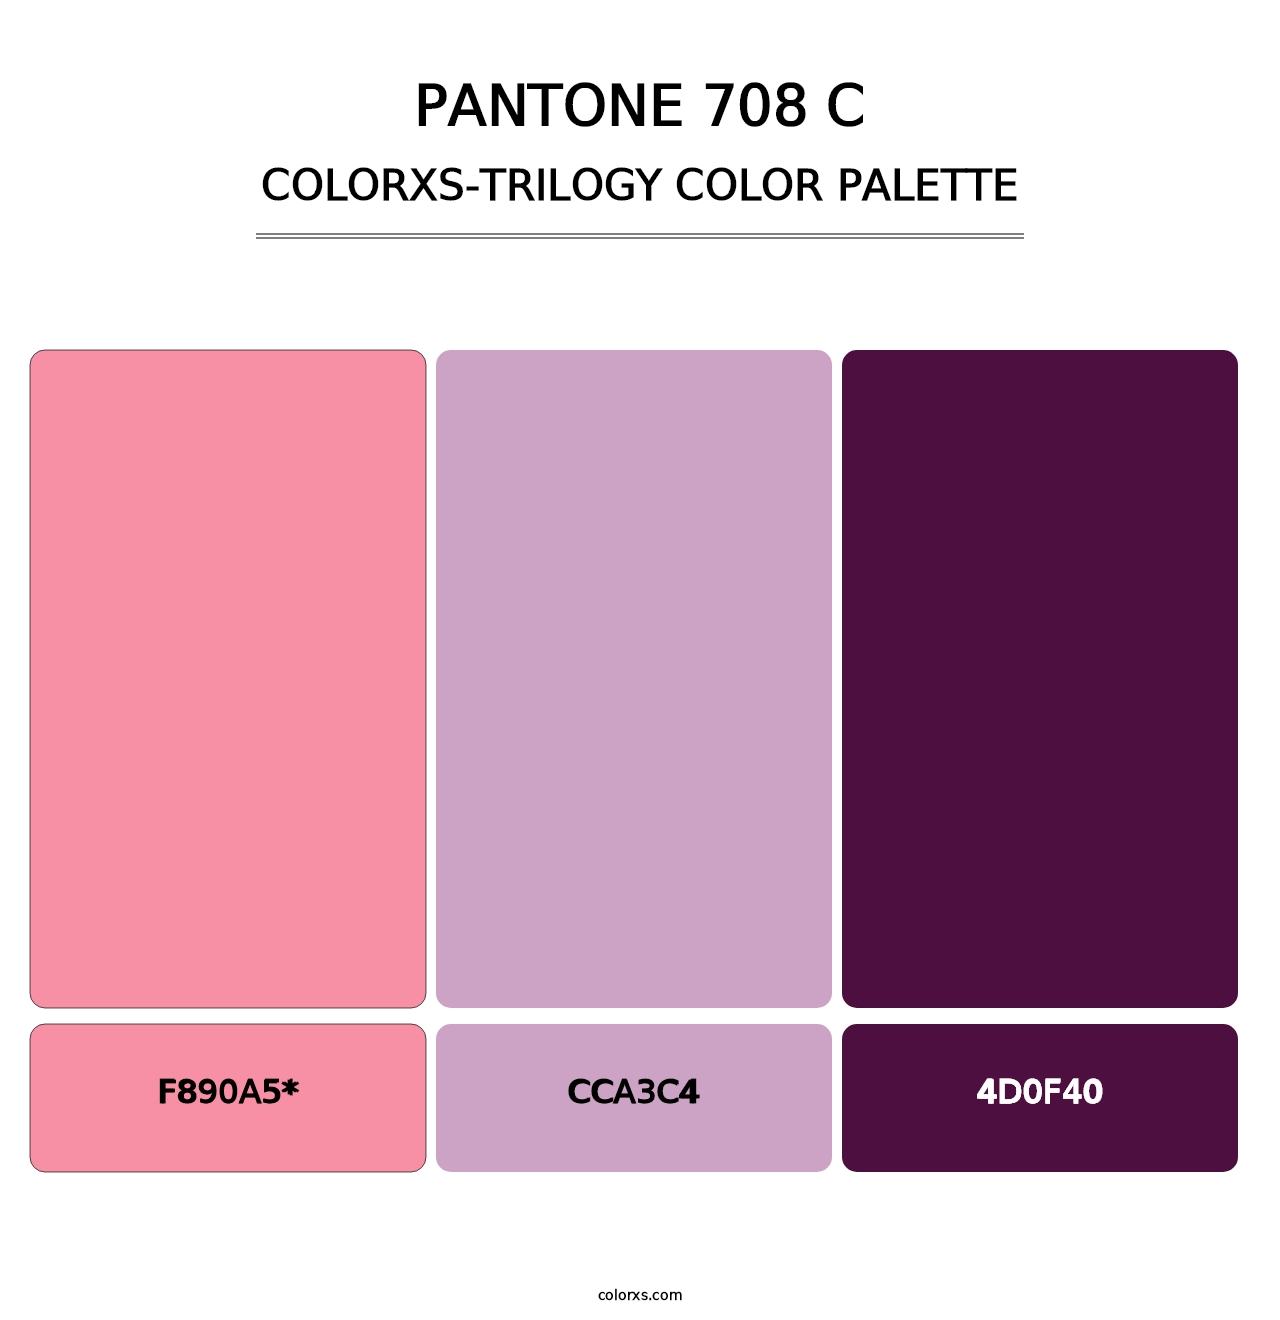 PANTONE 708 C - Colorxs Trilogy Palette